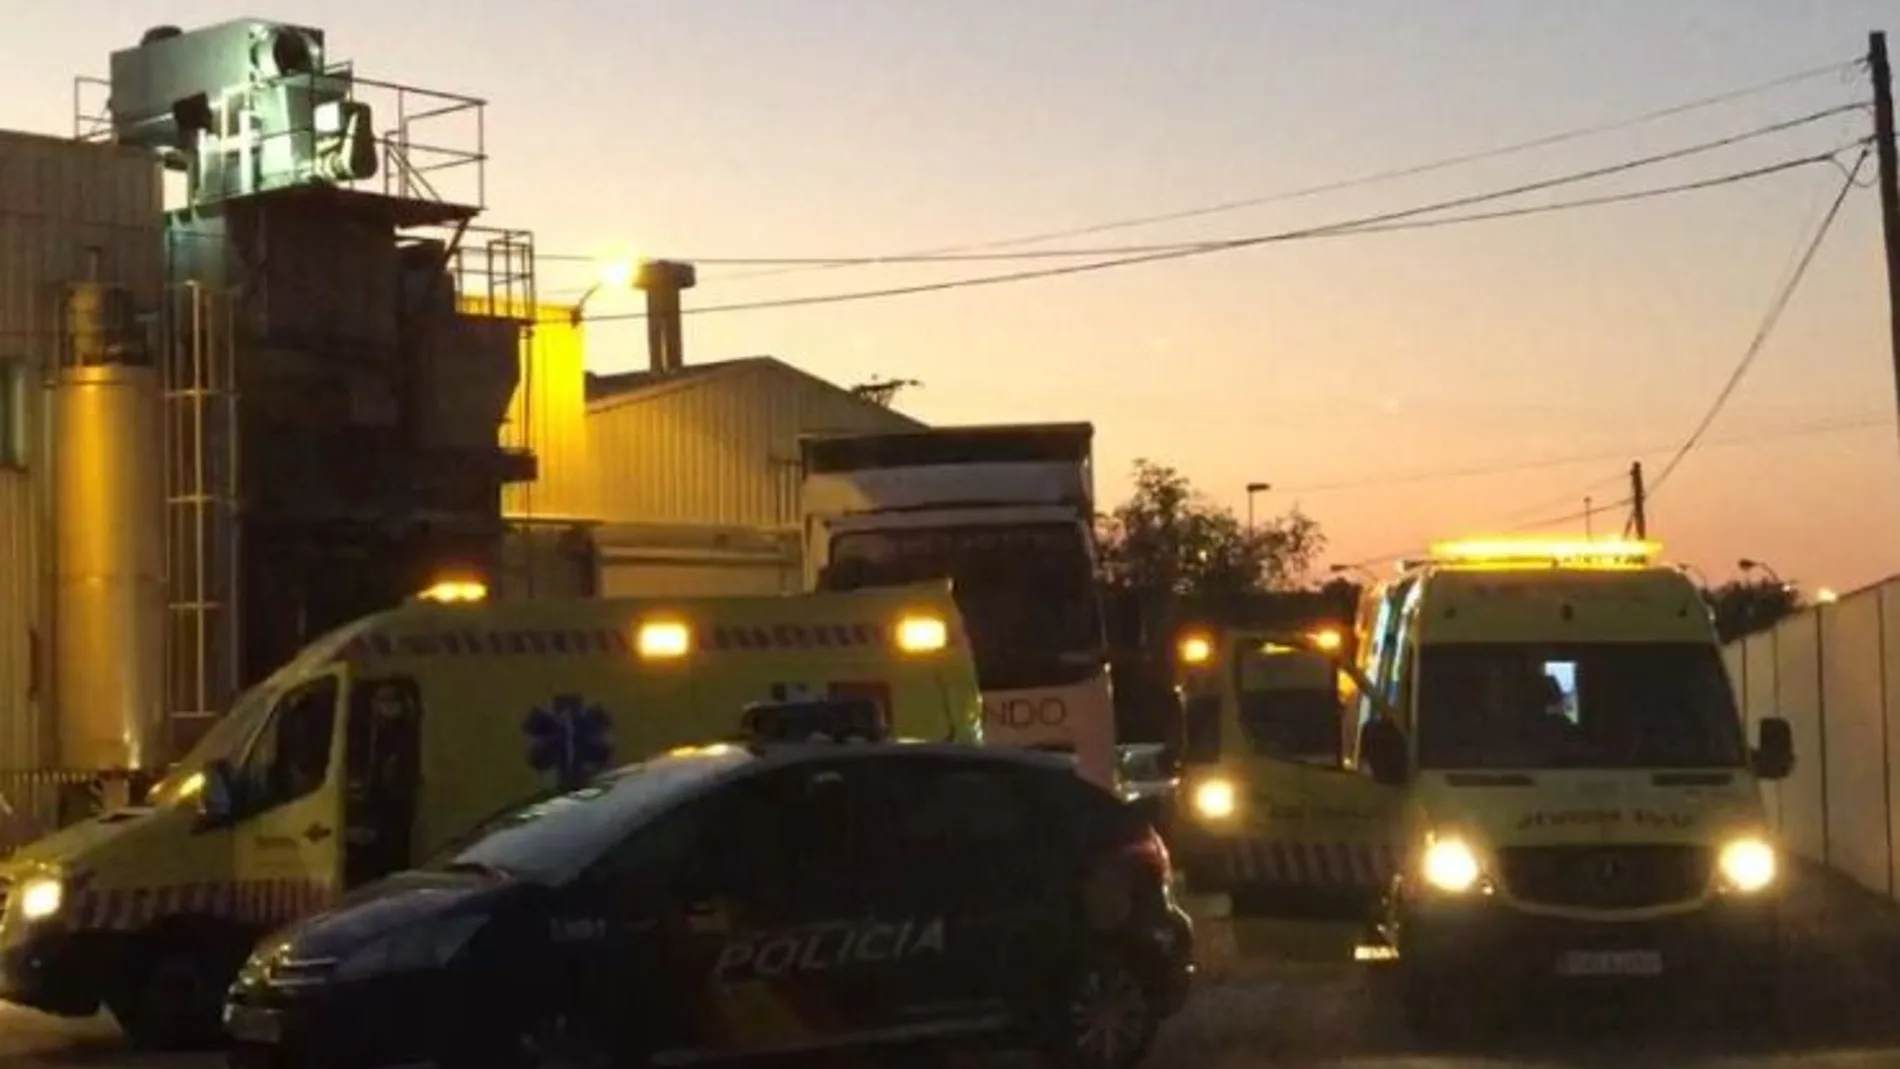 Muere un hombre atrapado por una máquina en una empresa cárnica en Leganés